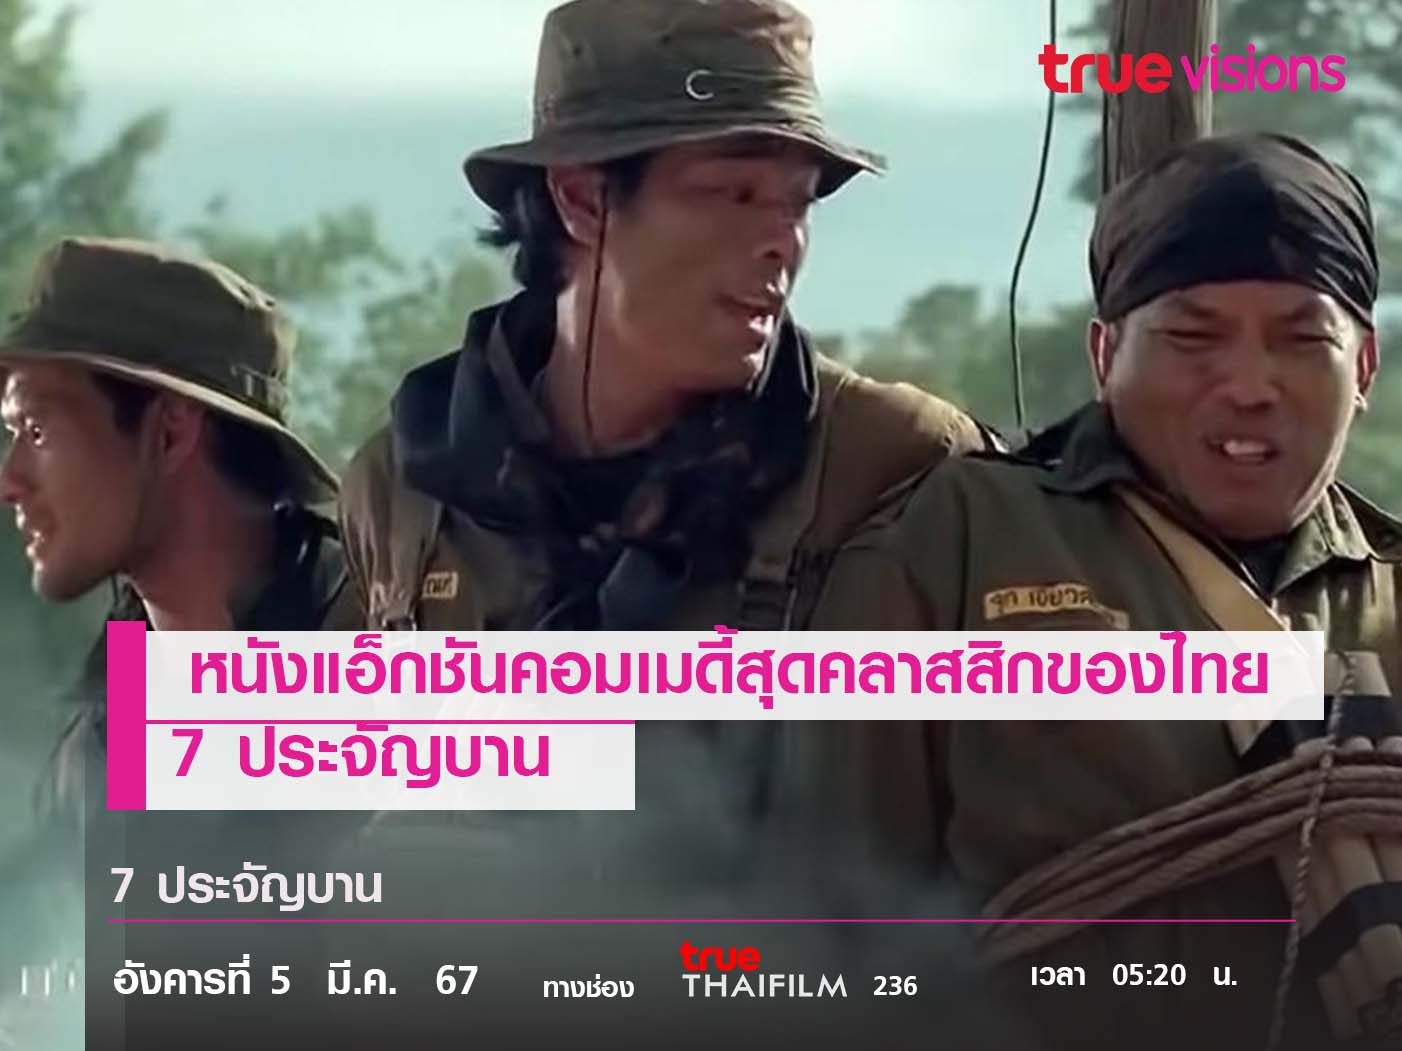 หนังแอ็กชันคอมเมดี้สุดคลาสสิกของไทย  7 ประจัญบาน